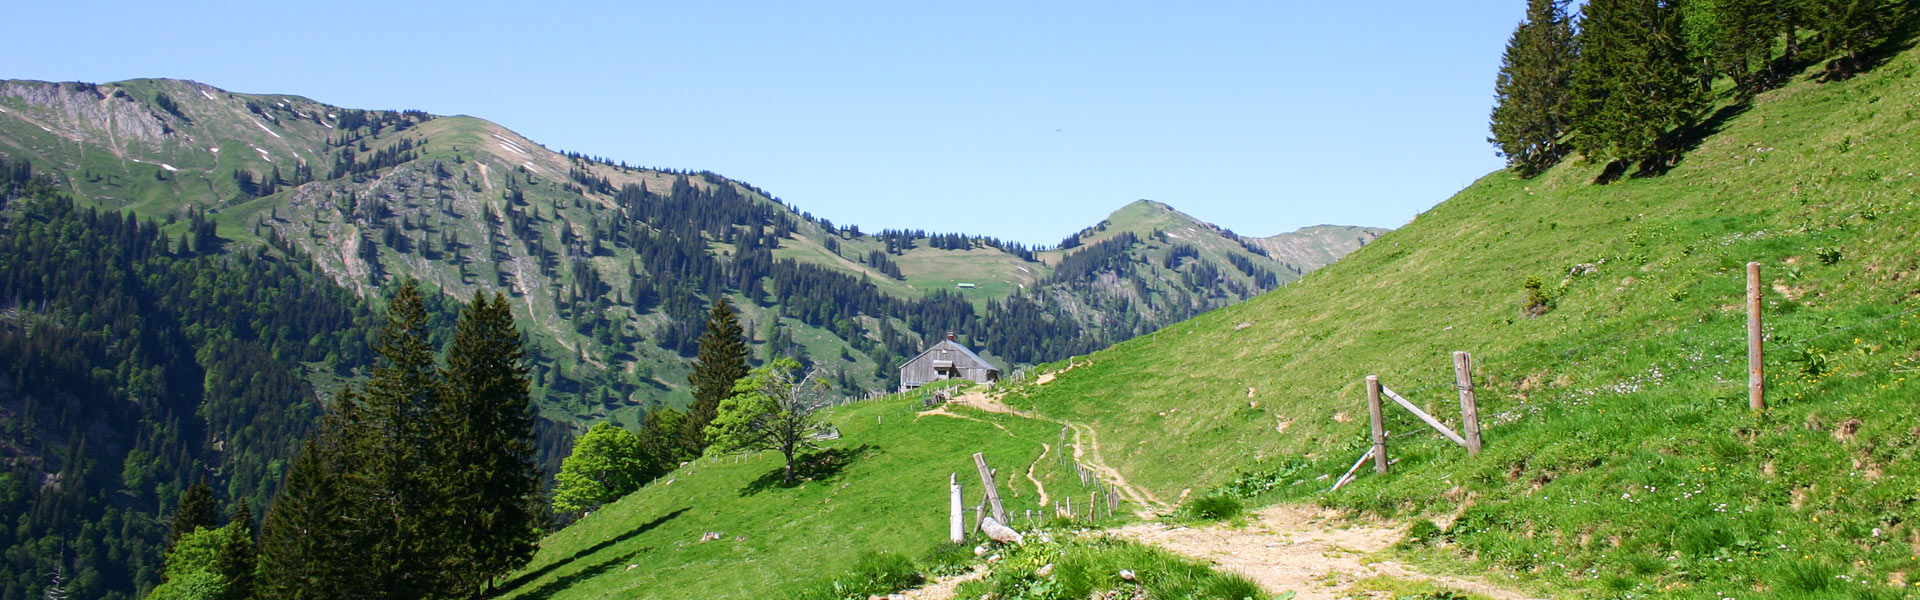 Bei dieser MTB Tour zur Höllritz Alpe hat man eine schöne Aussicht auf das Riedberger Horn und den Riedbergpass